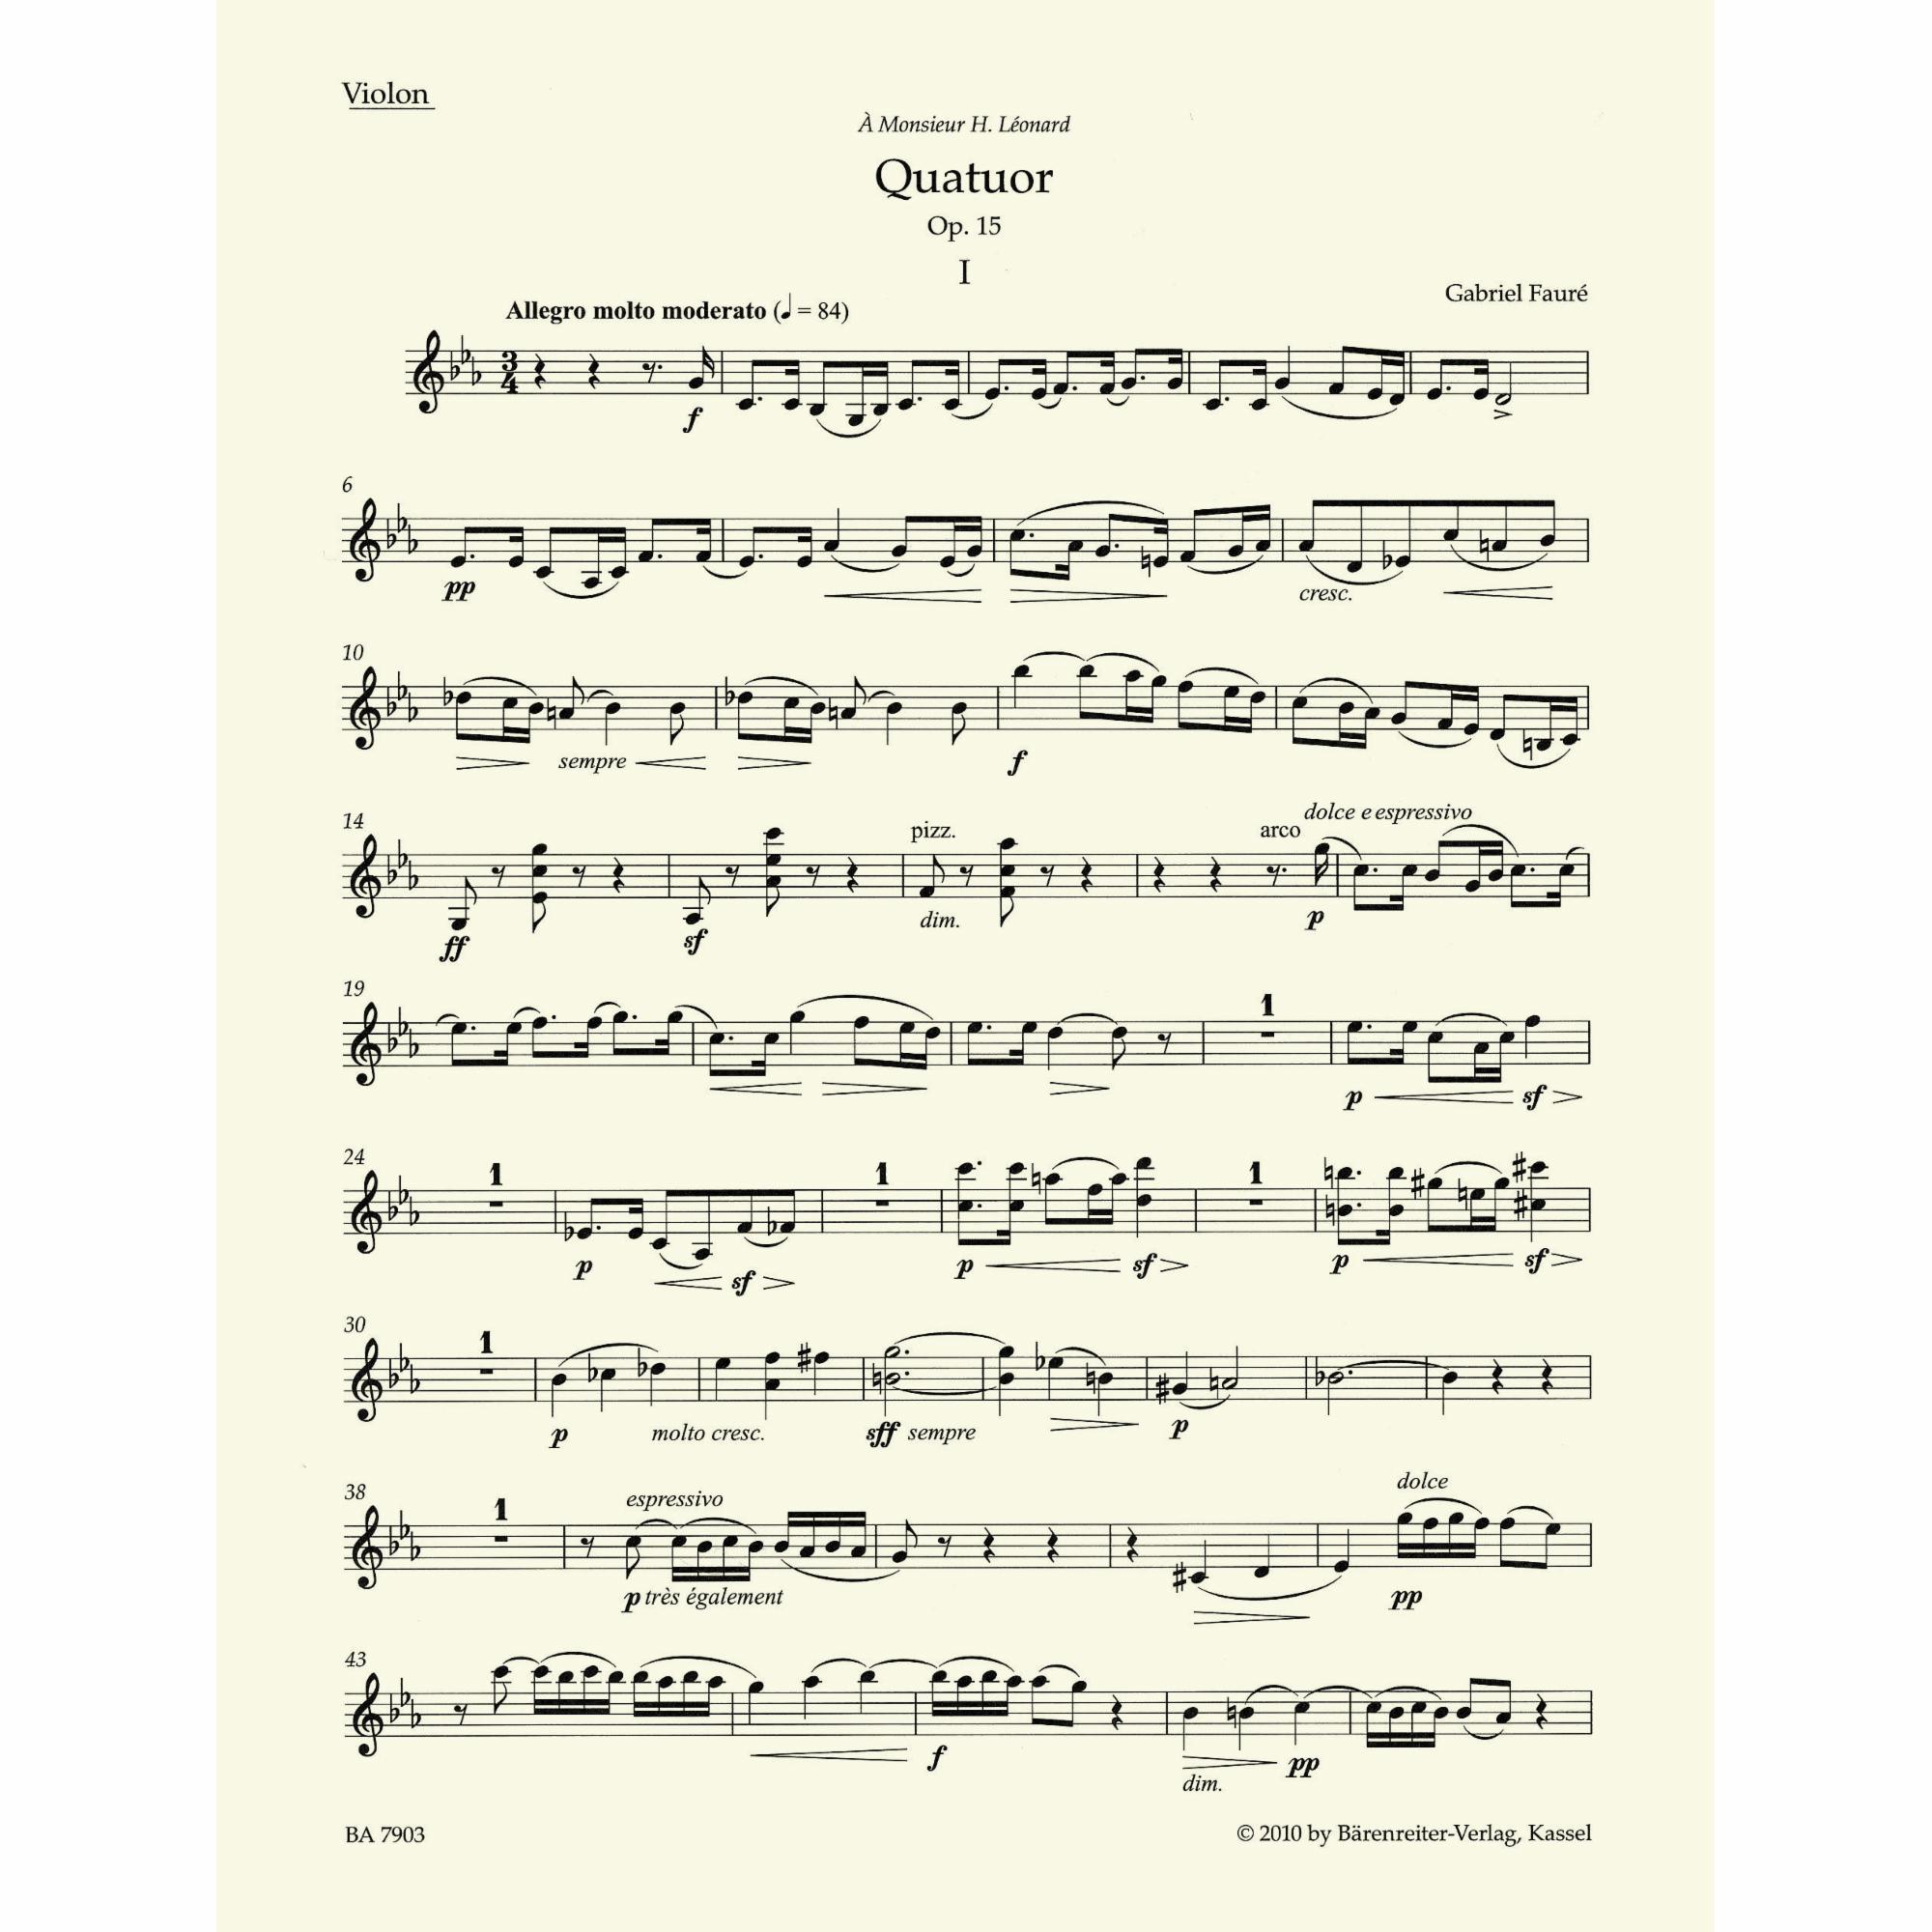 Sample: Violin (Pg. 2)